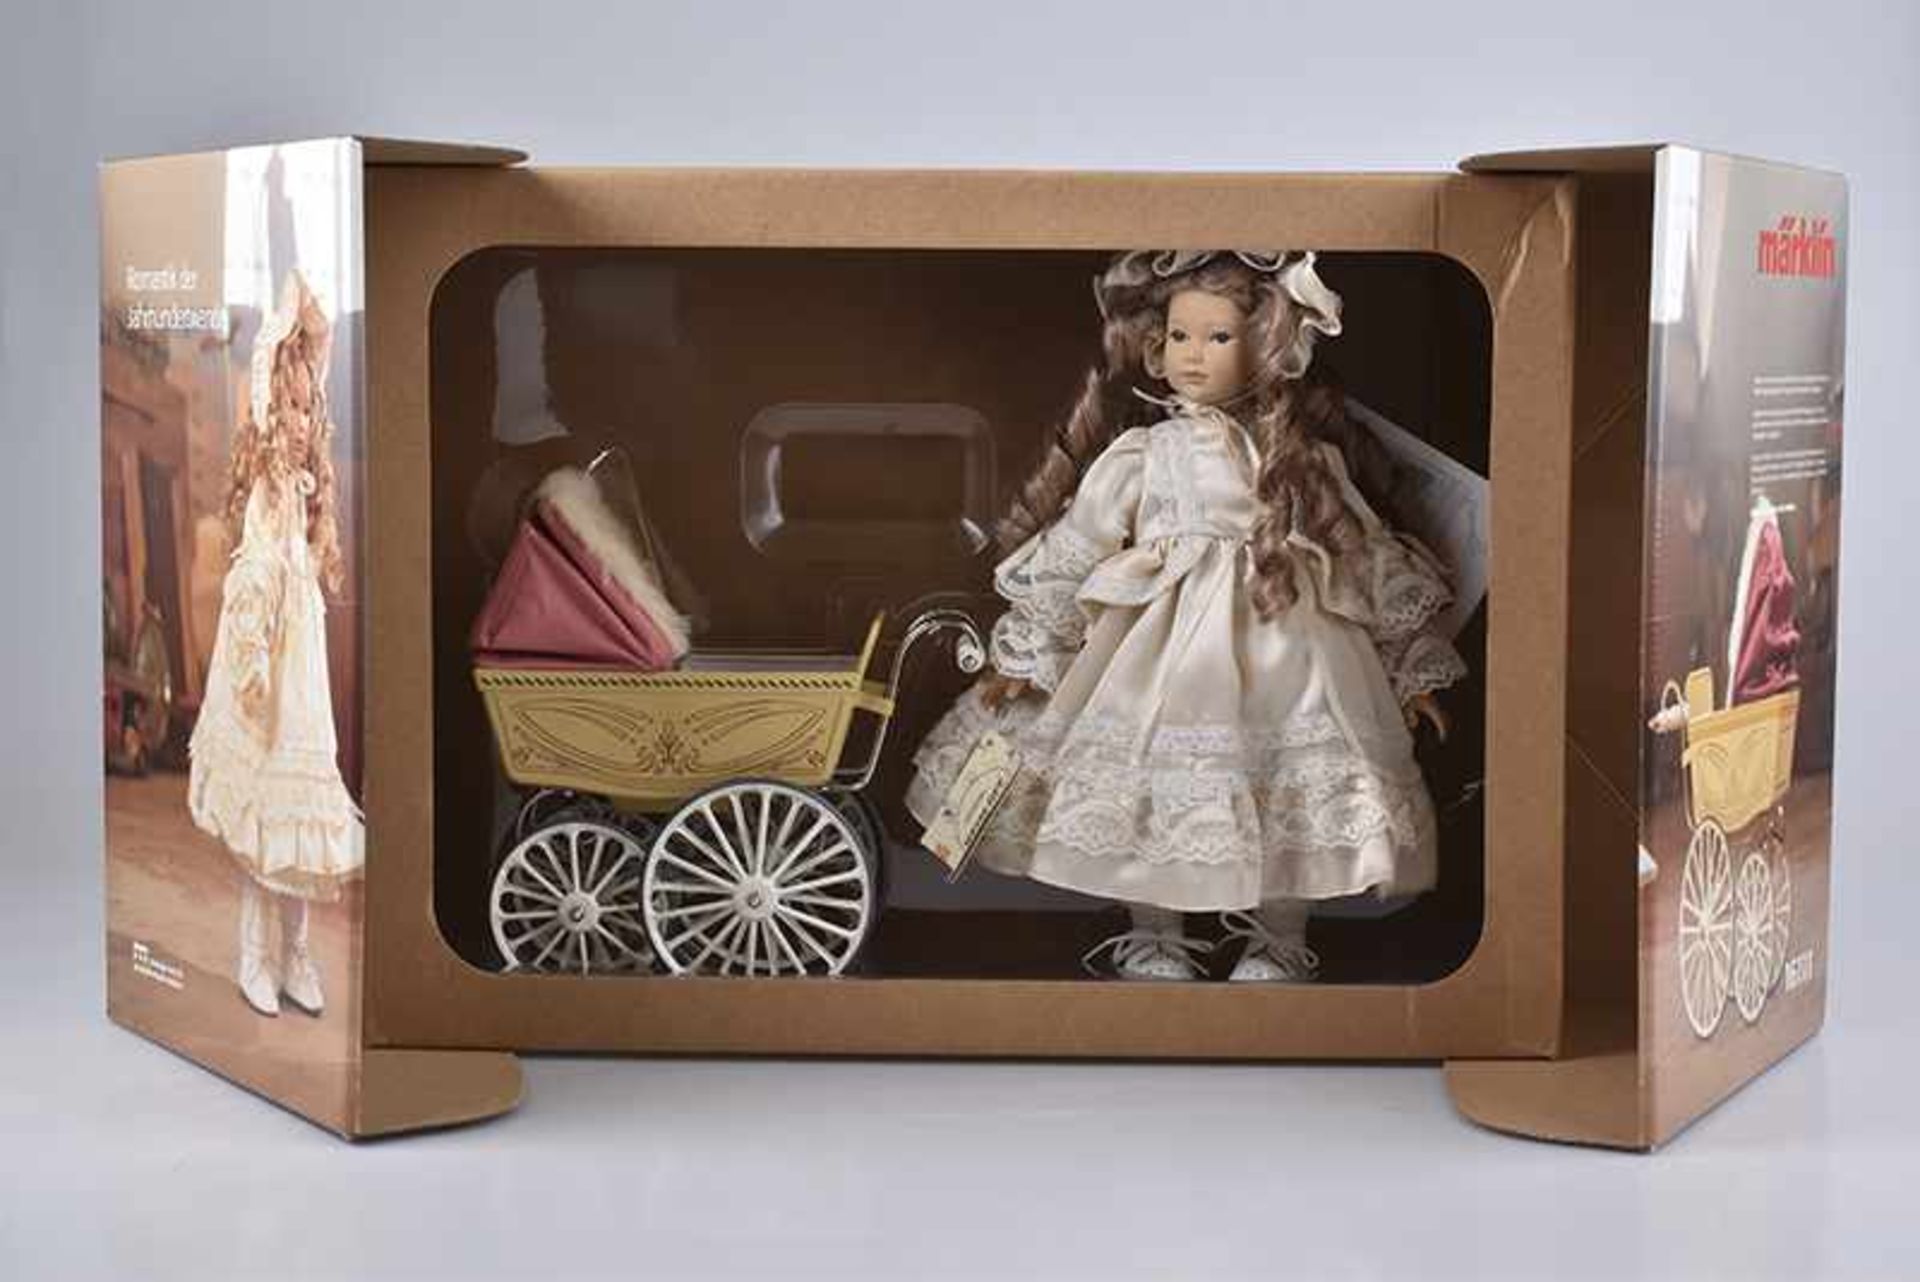 MÄRKLIN Puppenwagen mit HEIDI OTT Puppe, Nr. 16111, Wagen aus Metall/Holz, Verdeck bespannt mit